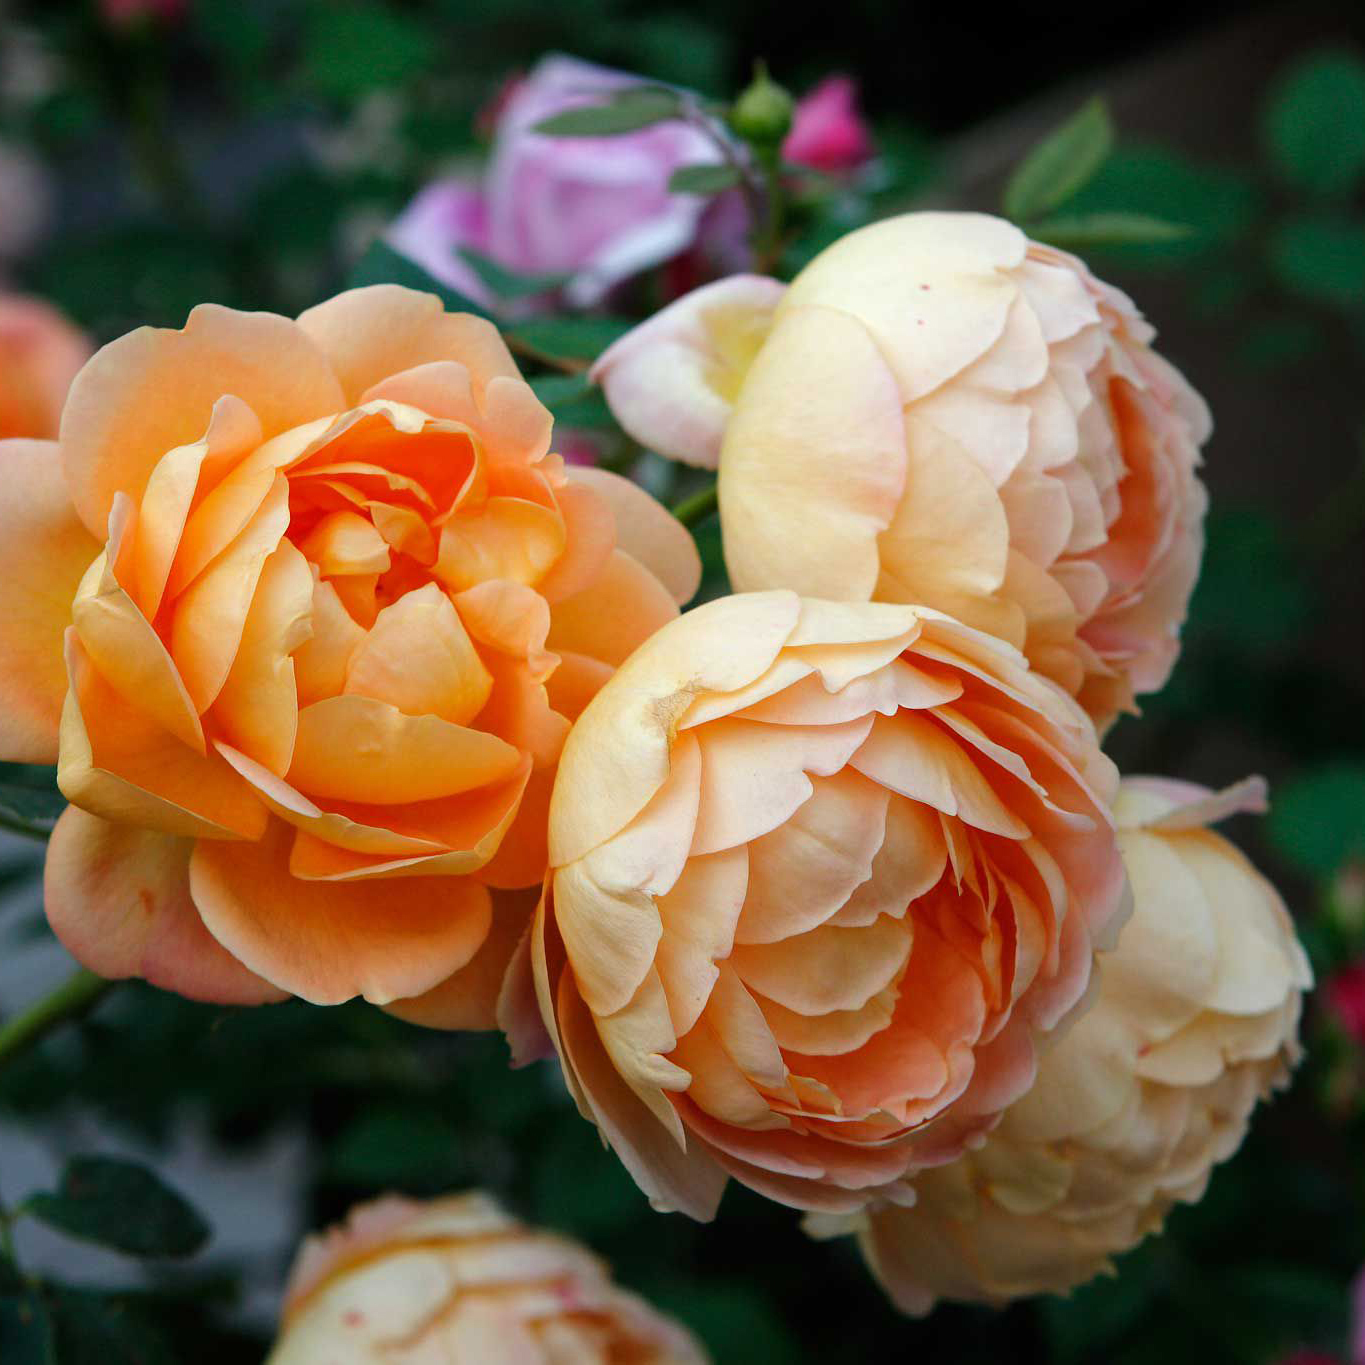 暖暖半岛 夏洛特夫人 英国奥斯汀玫瑰灌木抗病易载欧月玫瑰花卉庭